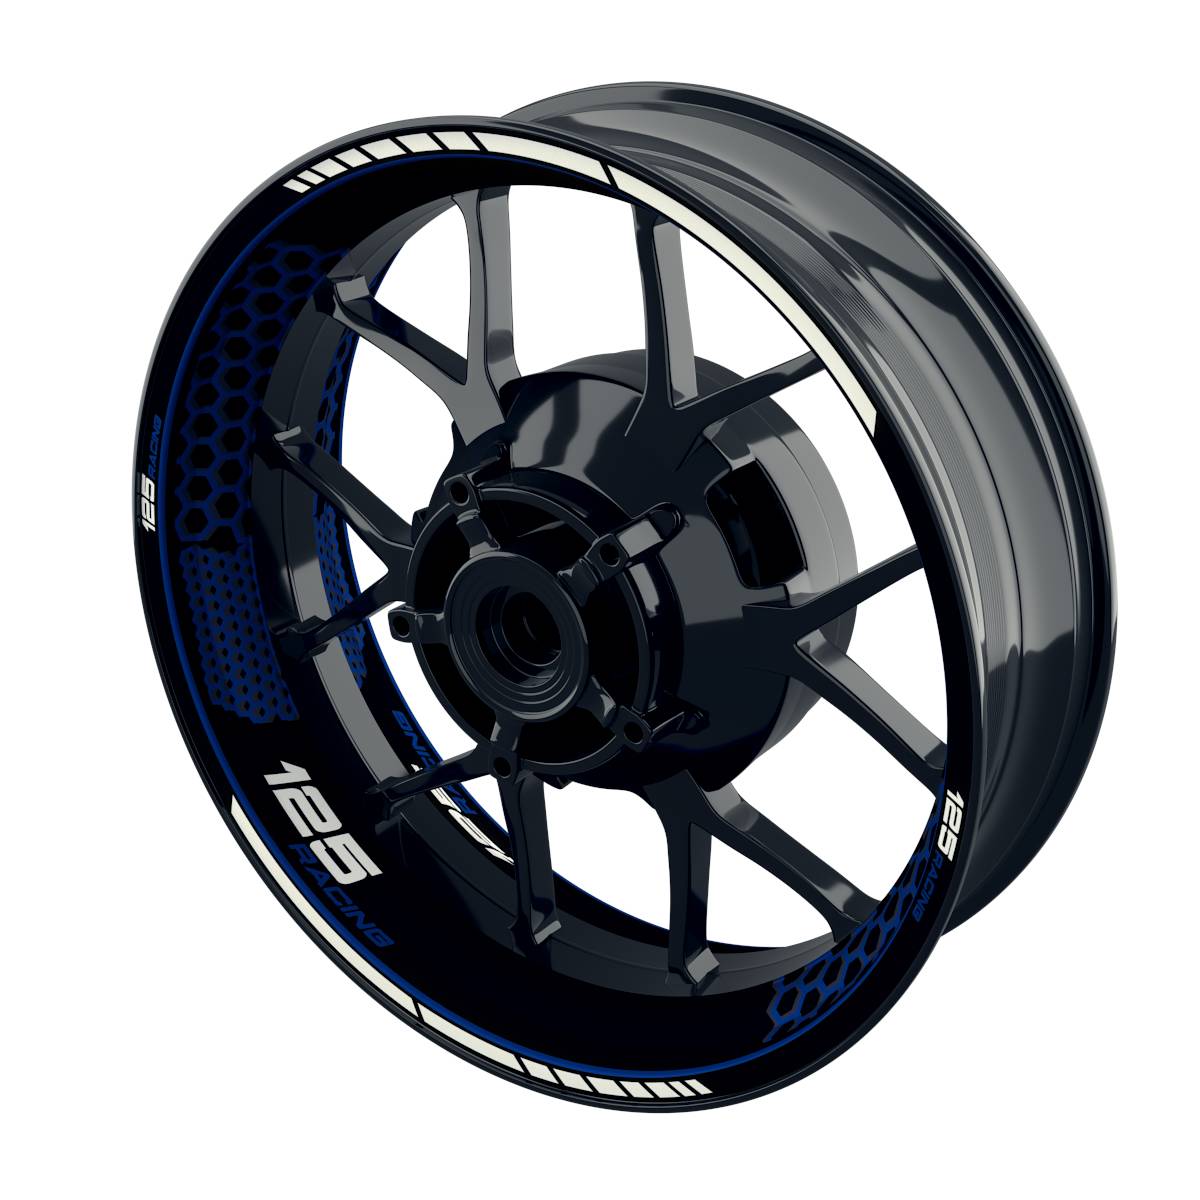 125 Racing Rim Decals Hexagon Wheelsticker Premium